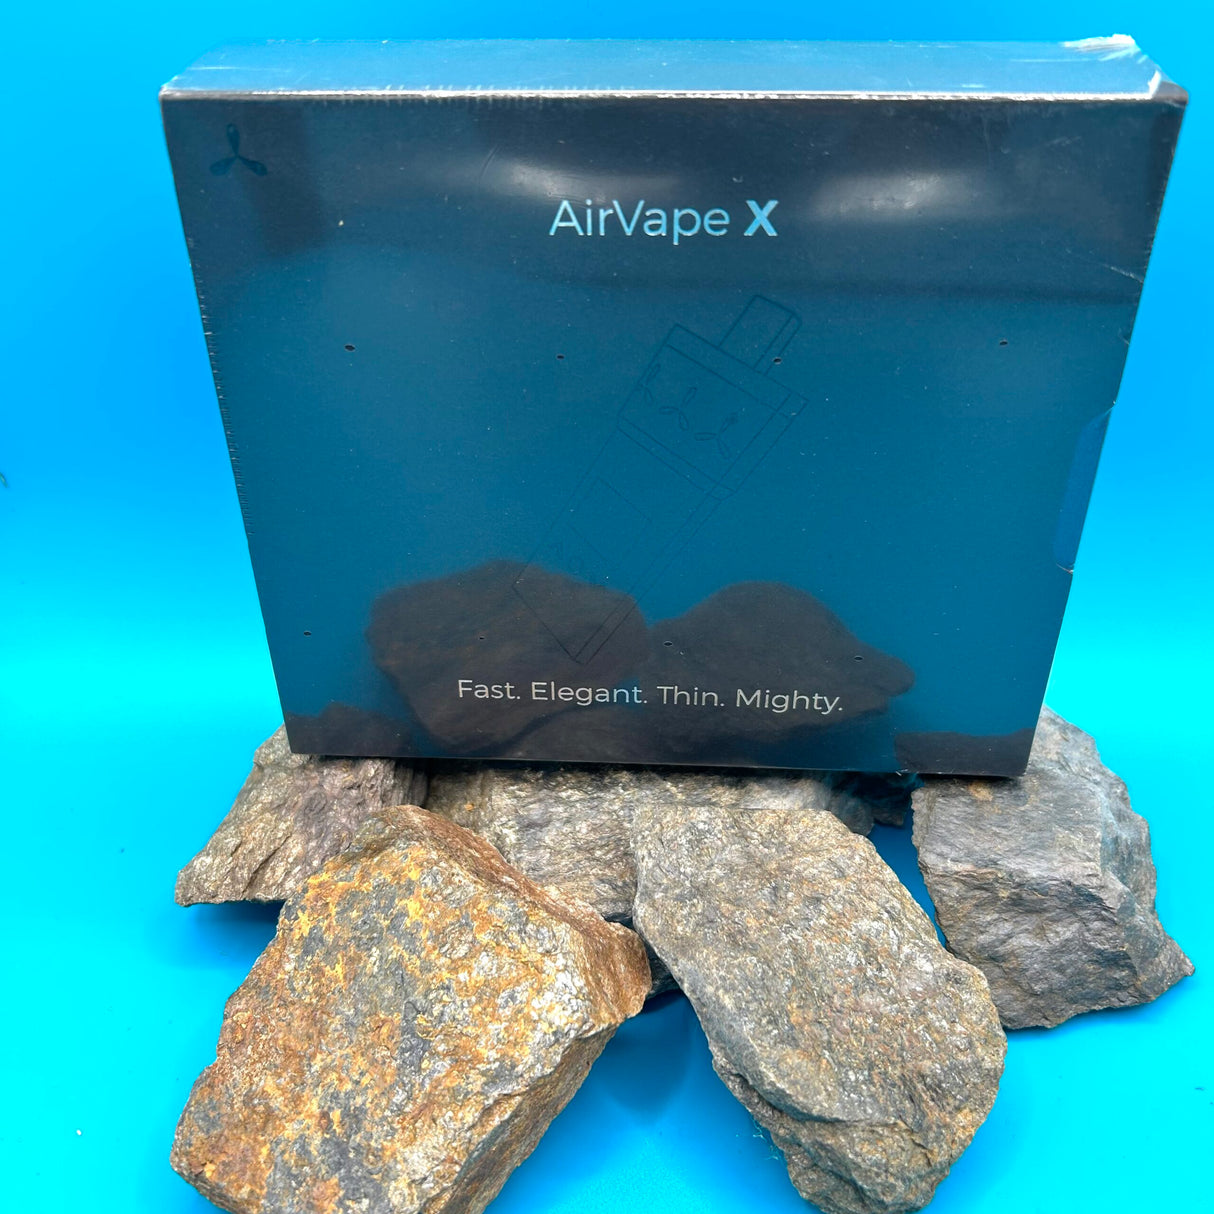 AirVape X Vaporizer im Mellow Peaks CBD Smartshop, Q24 Imst, Österreich in Top Qualität kaufen